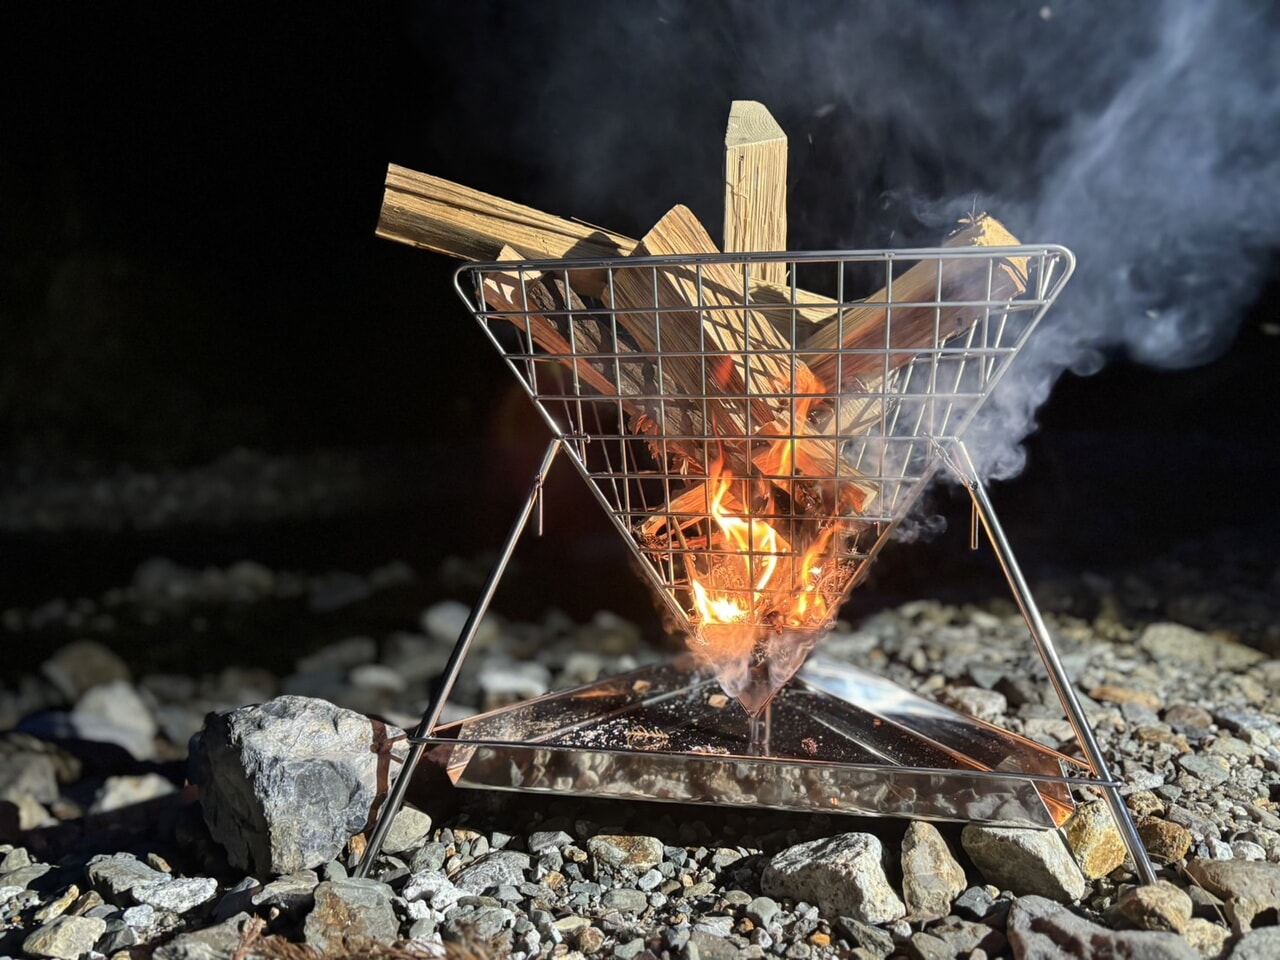 焚き火好きの技術者が作った『熾火を楽しむ』ための新しい焚火台「熾火台」が発売開始